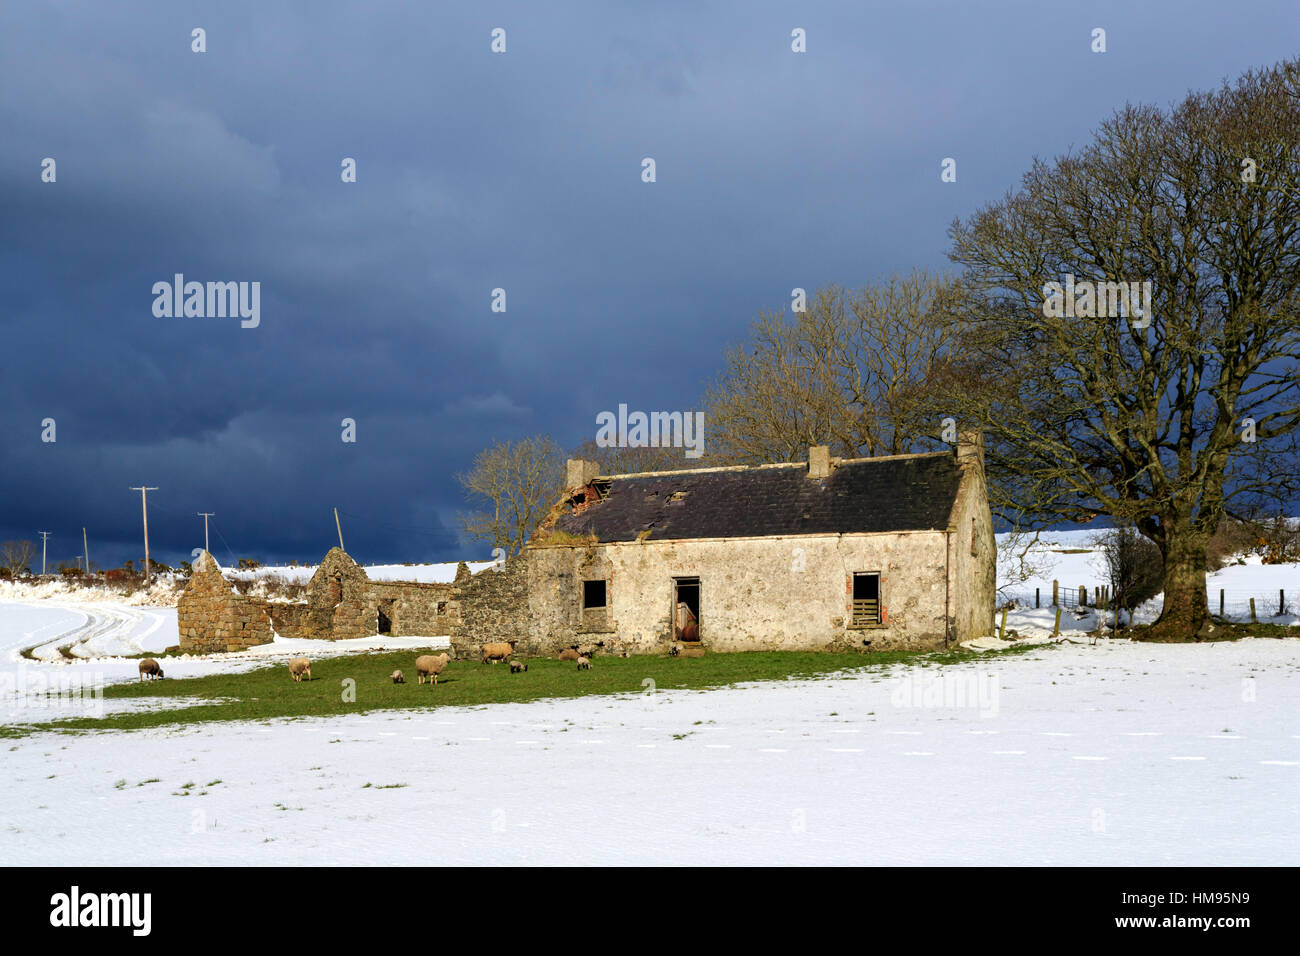 Häuschen und Bäume, Torr Head, County Antrim, Ulster, Nordirland, Vereinigtes Königreich Stockfoto